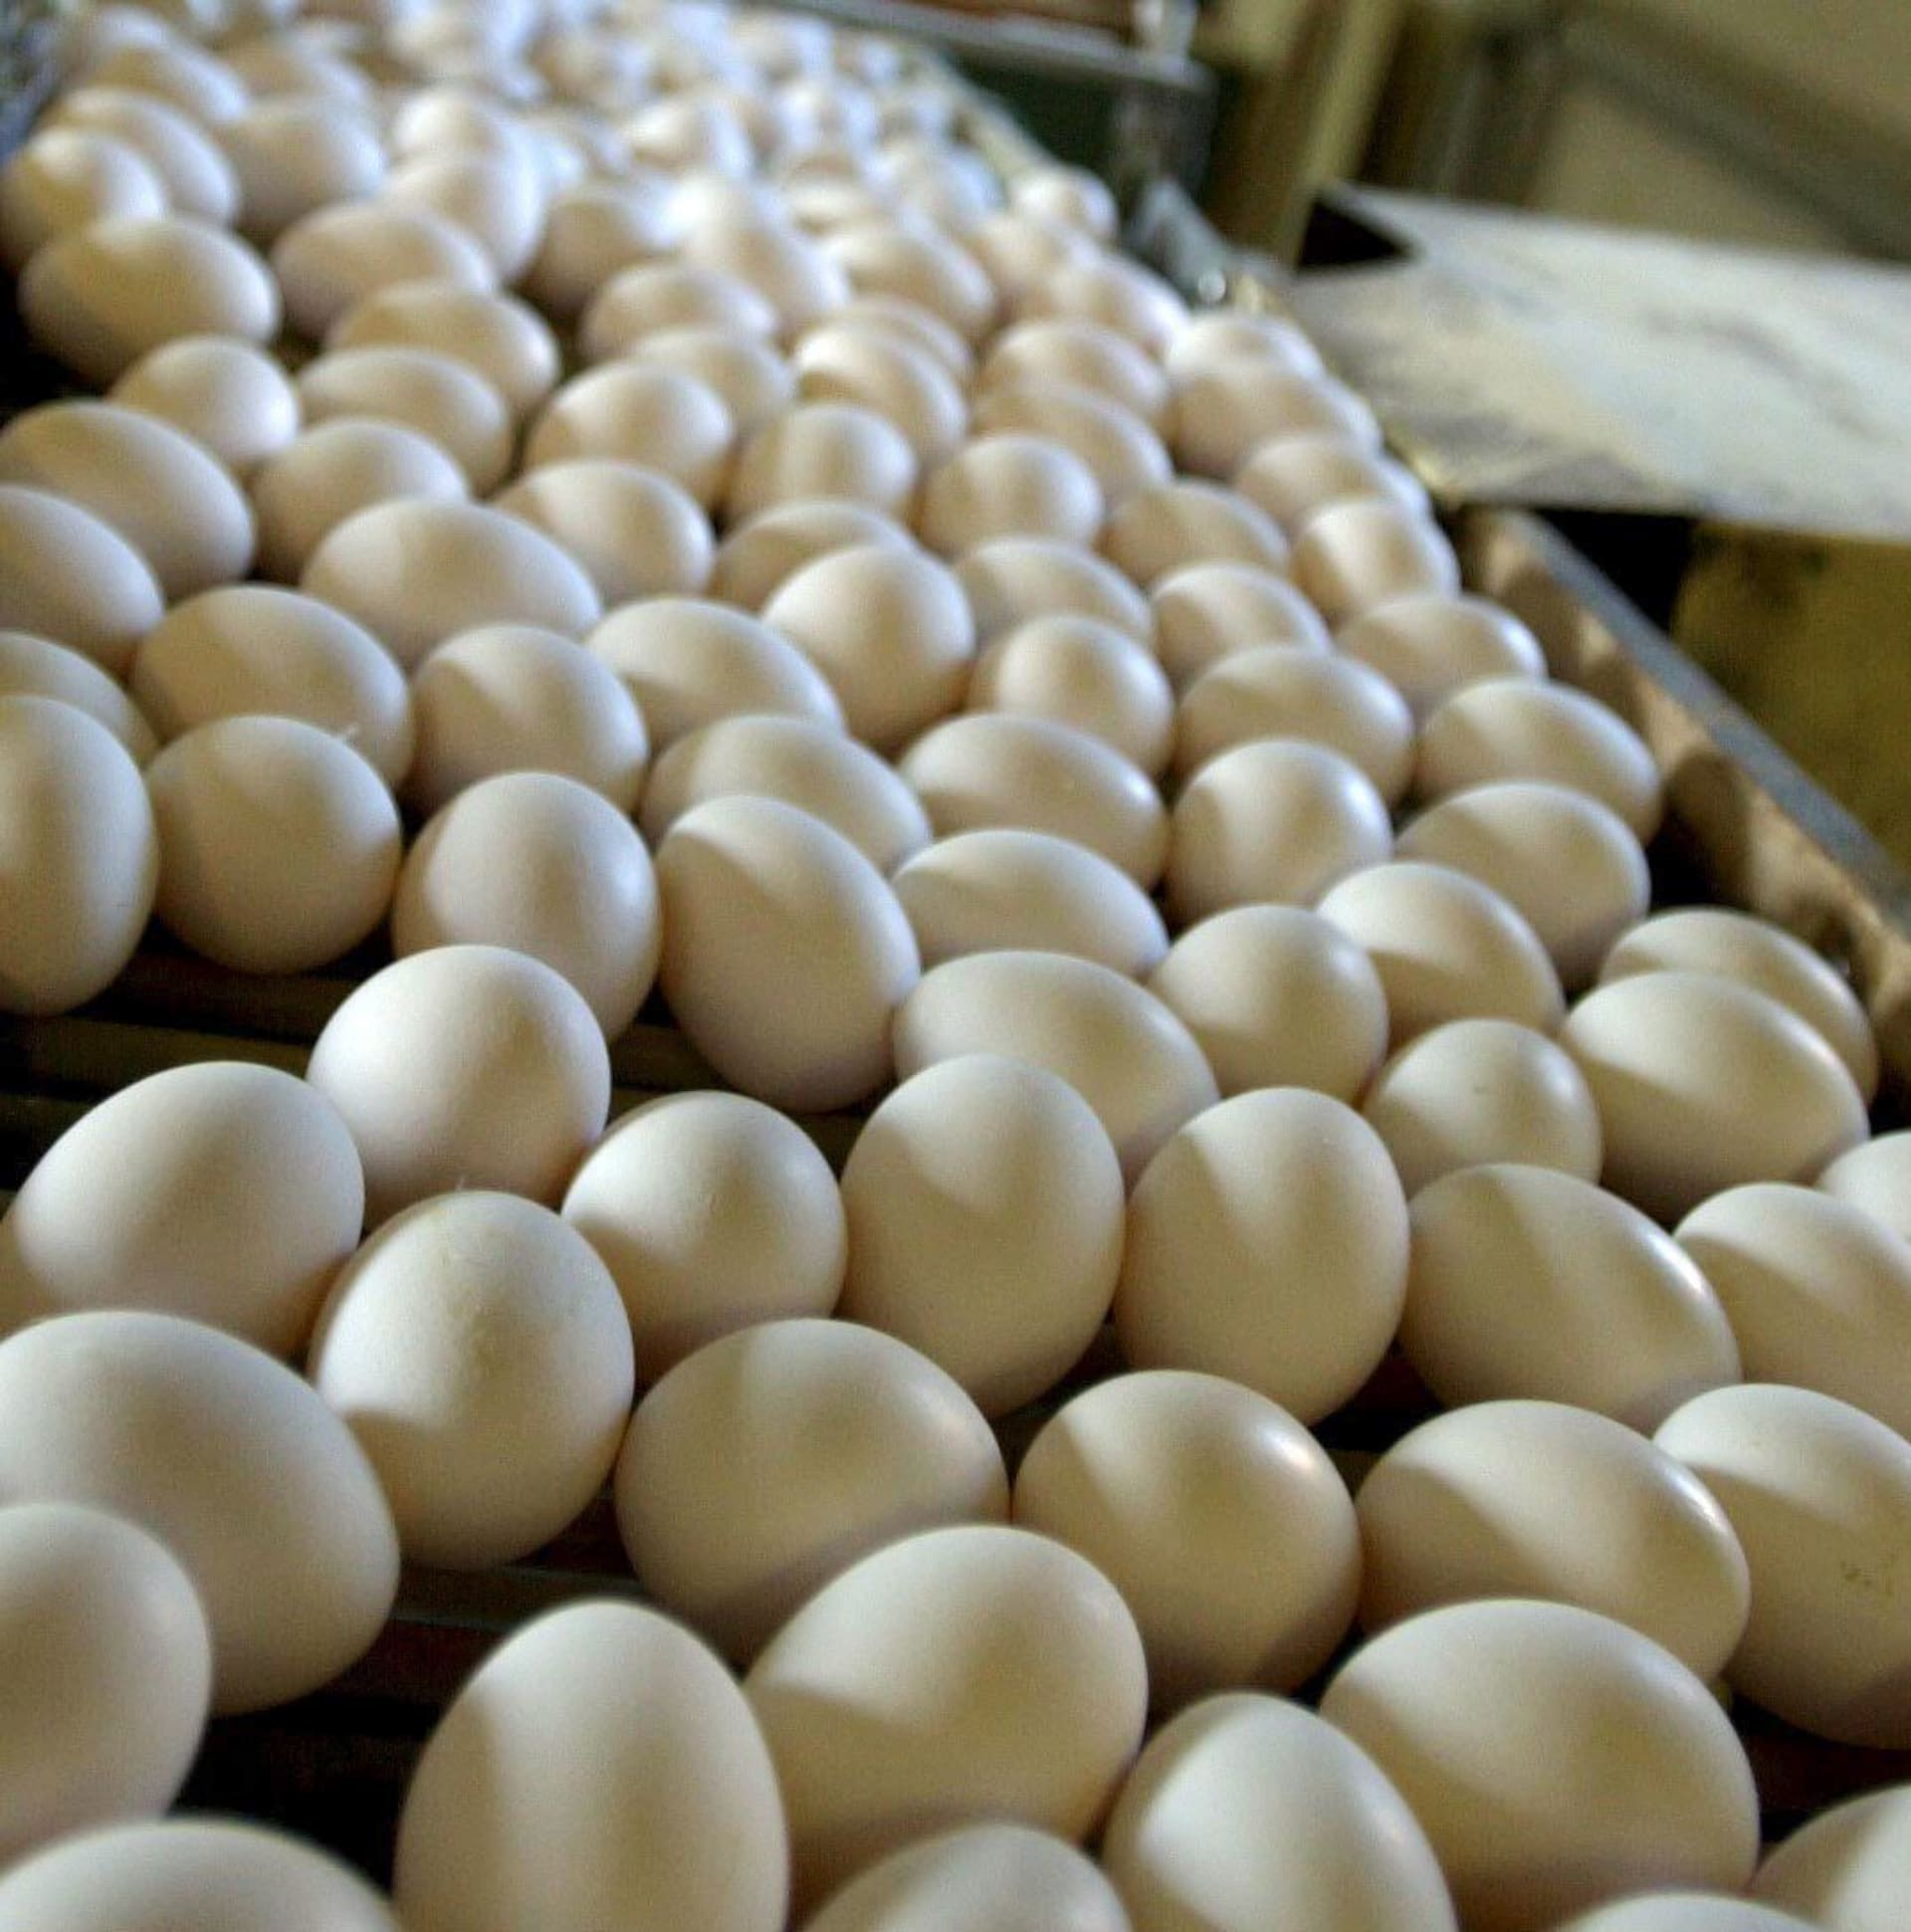 Je bíle vejce kvalitnější?